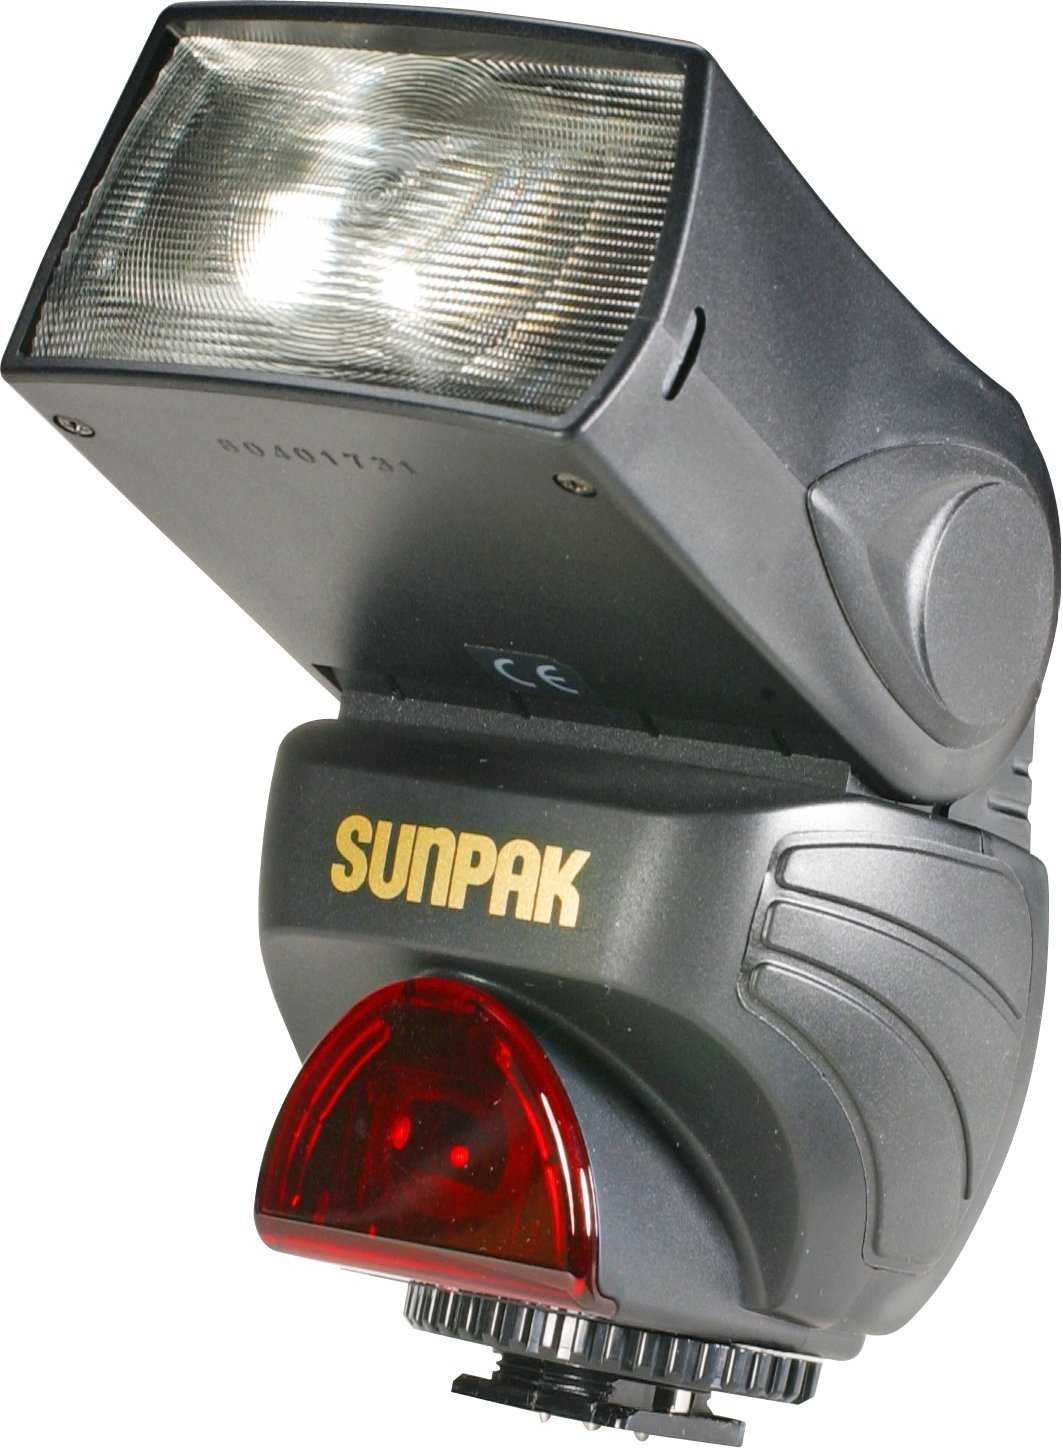 Sunpak pz40x for canon купить по акционной цене , отзывы и обзоры.